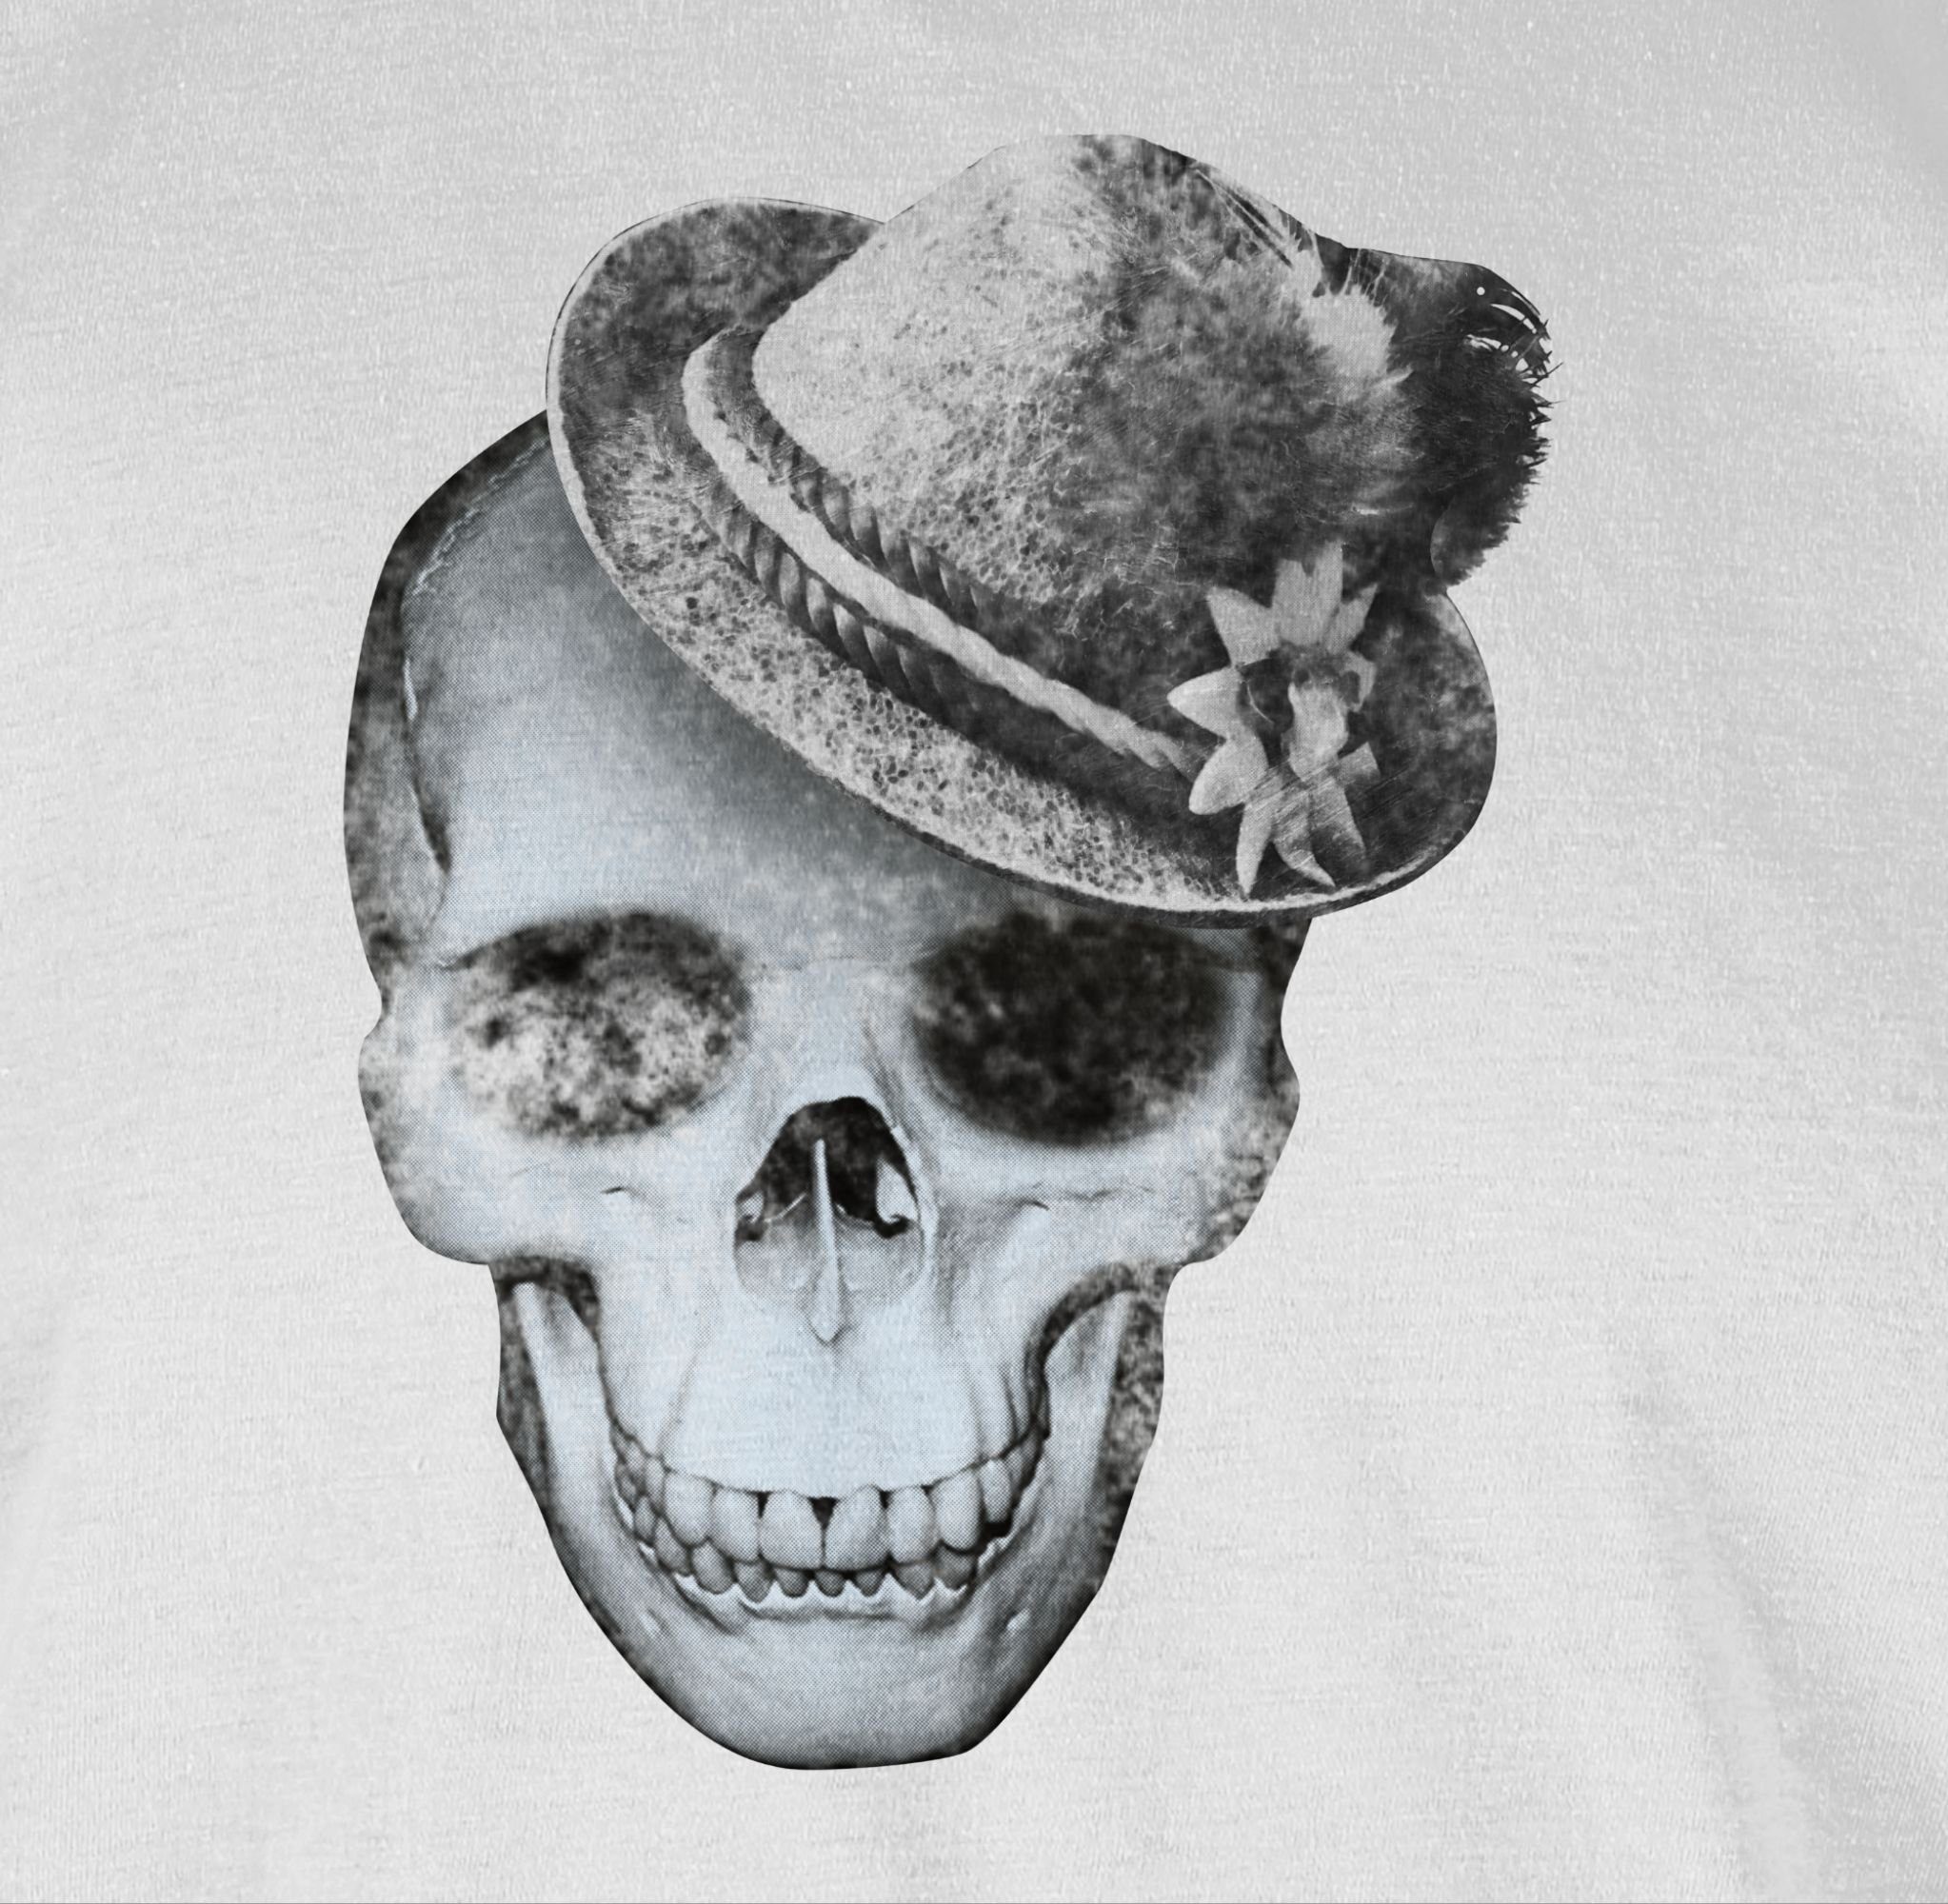 mit Mode Oktoberfest Totenkopf für Shirtracer Weiß 02 Herren T-Shirt Filzhut